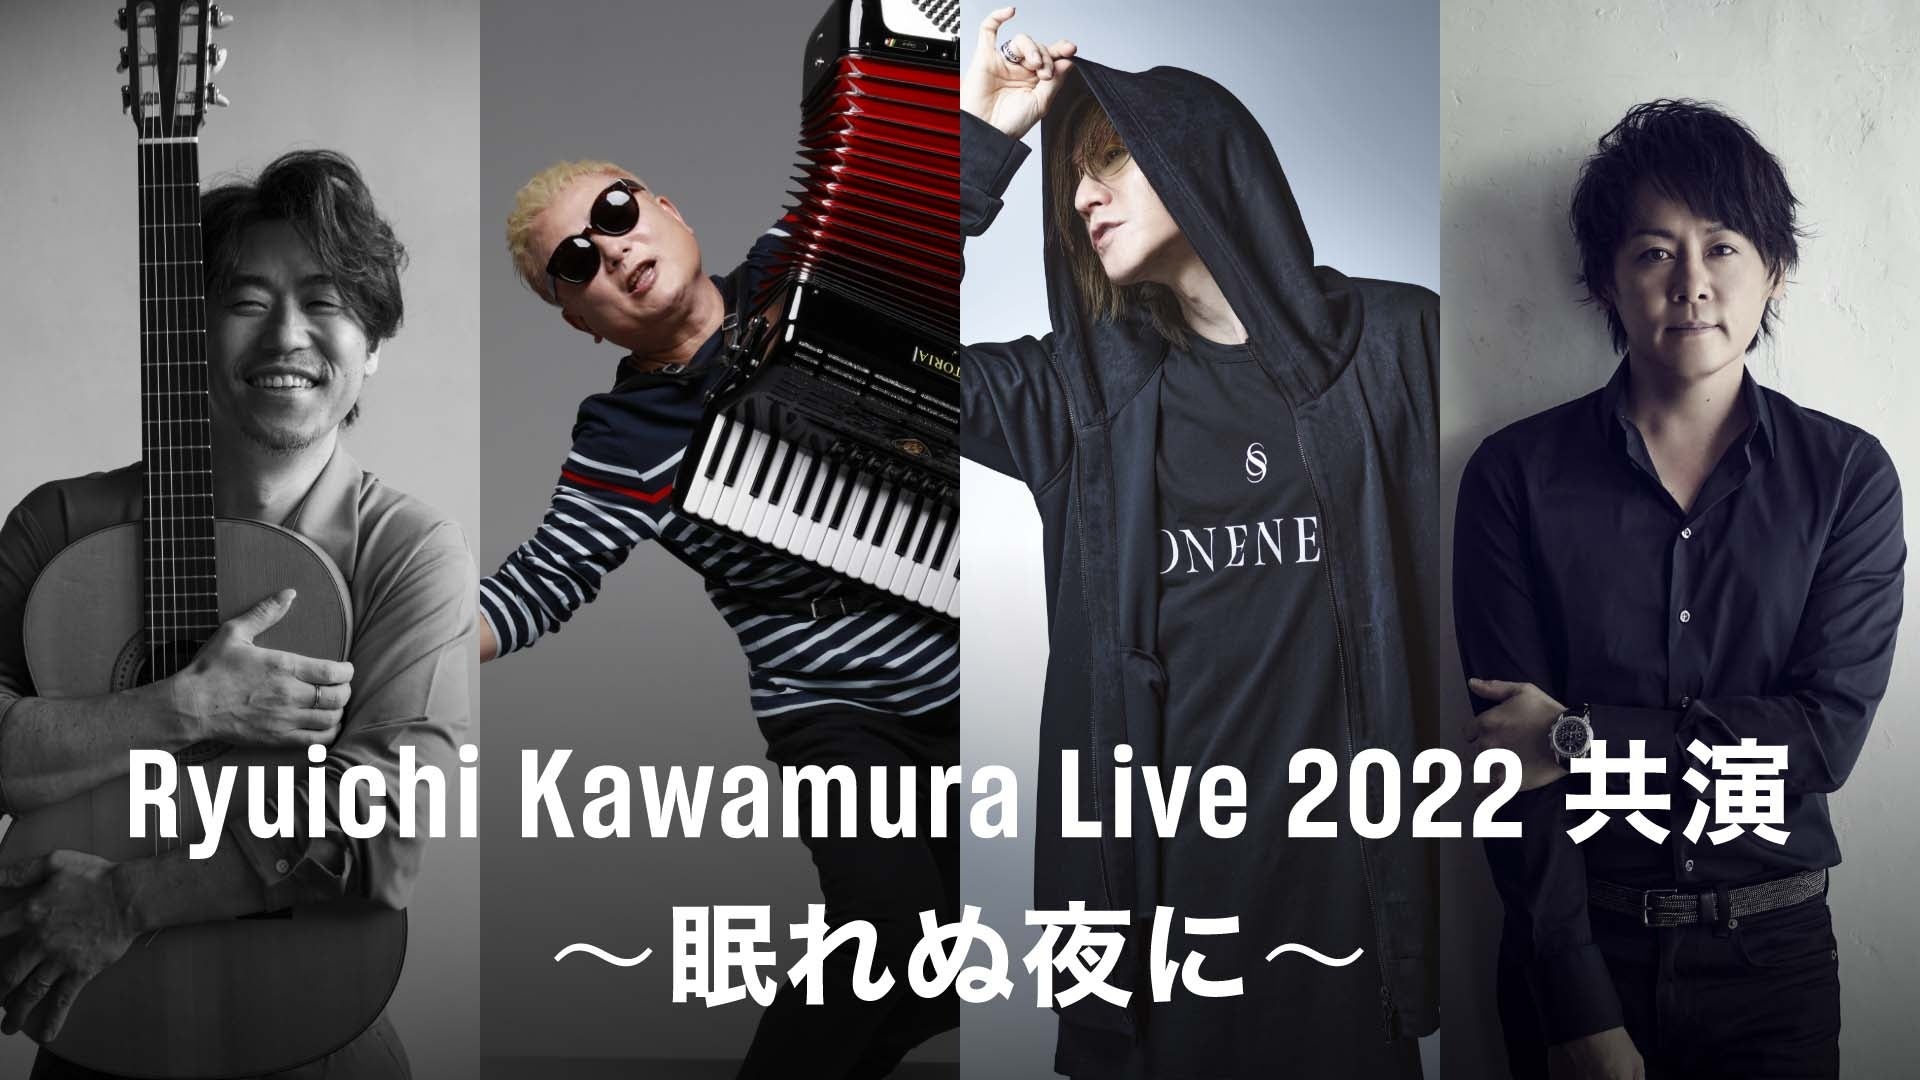 名古屋造形大学は国際芸術祭「あいち2022」で開催される音楽イベント「STILLING ALIVE MUSIC CLUB」に協力しています。